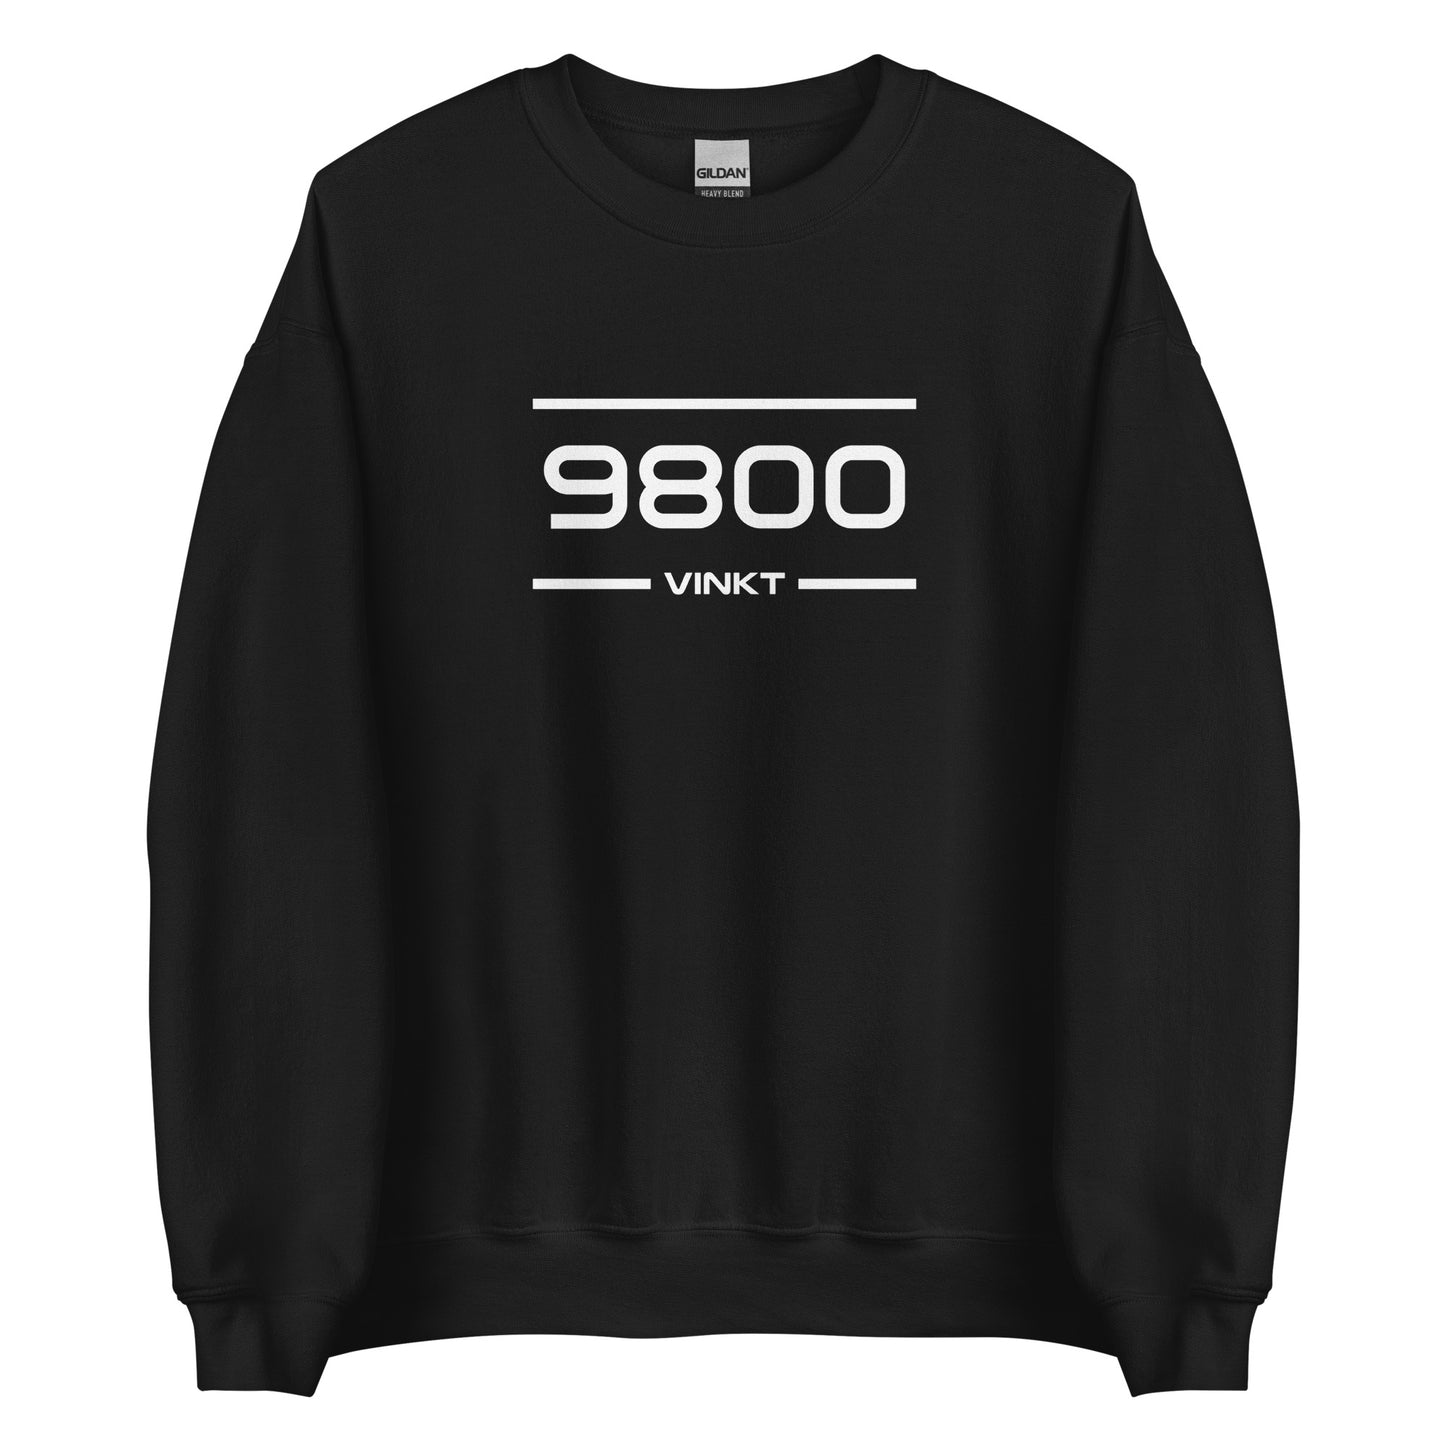 Sweater - 9800 - Vinkt (M/V)